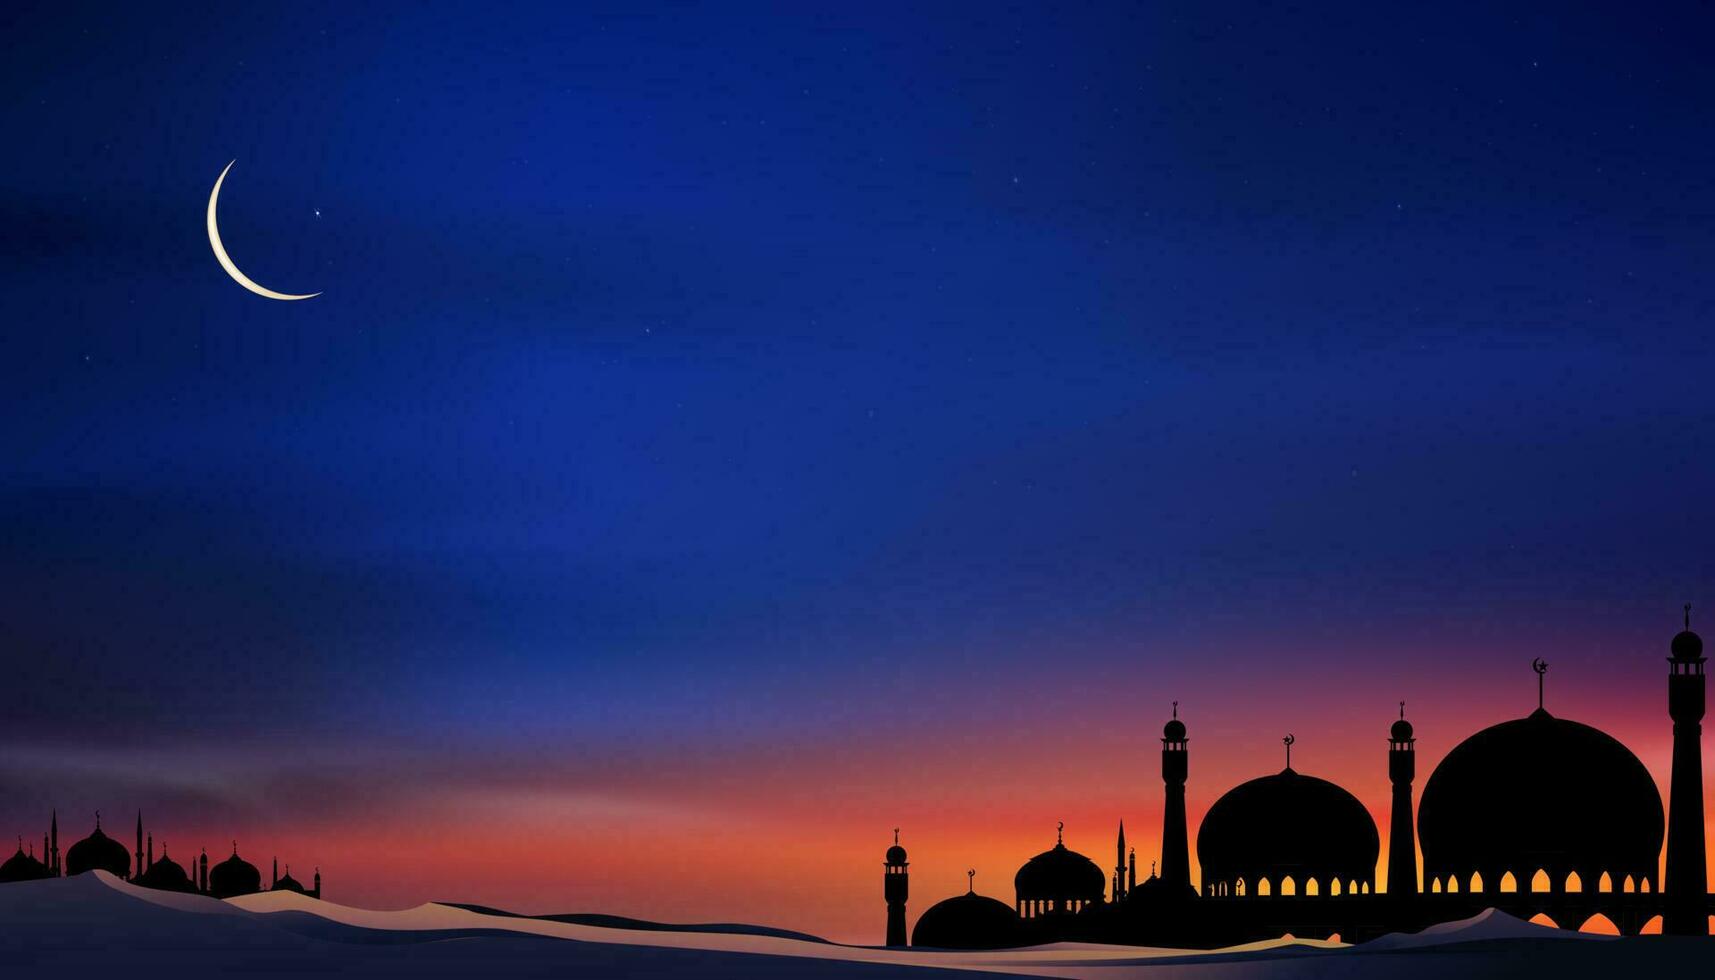 carte islamique avec mosquées à dôme silhouette, croissant de lune sur fond de ciel orange, nuit de ramadan vetor avec ciel crépusculaire pour la religion islamique, eid al-adha, eid mubarak, eid al fitr, ramadan kareem vecteur